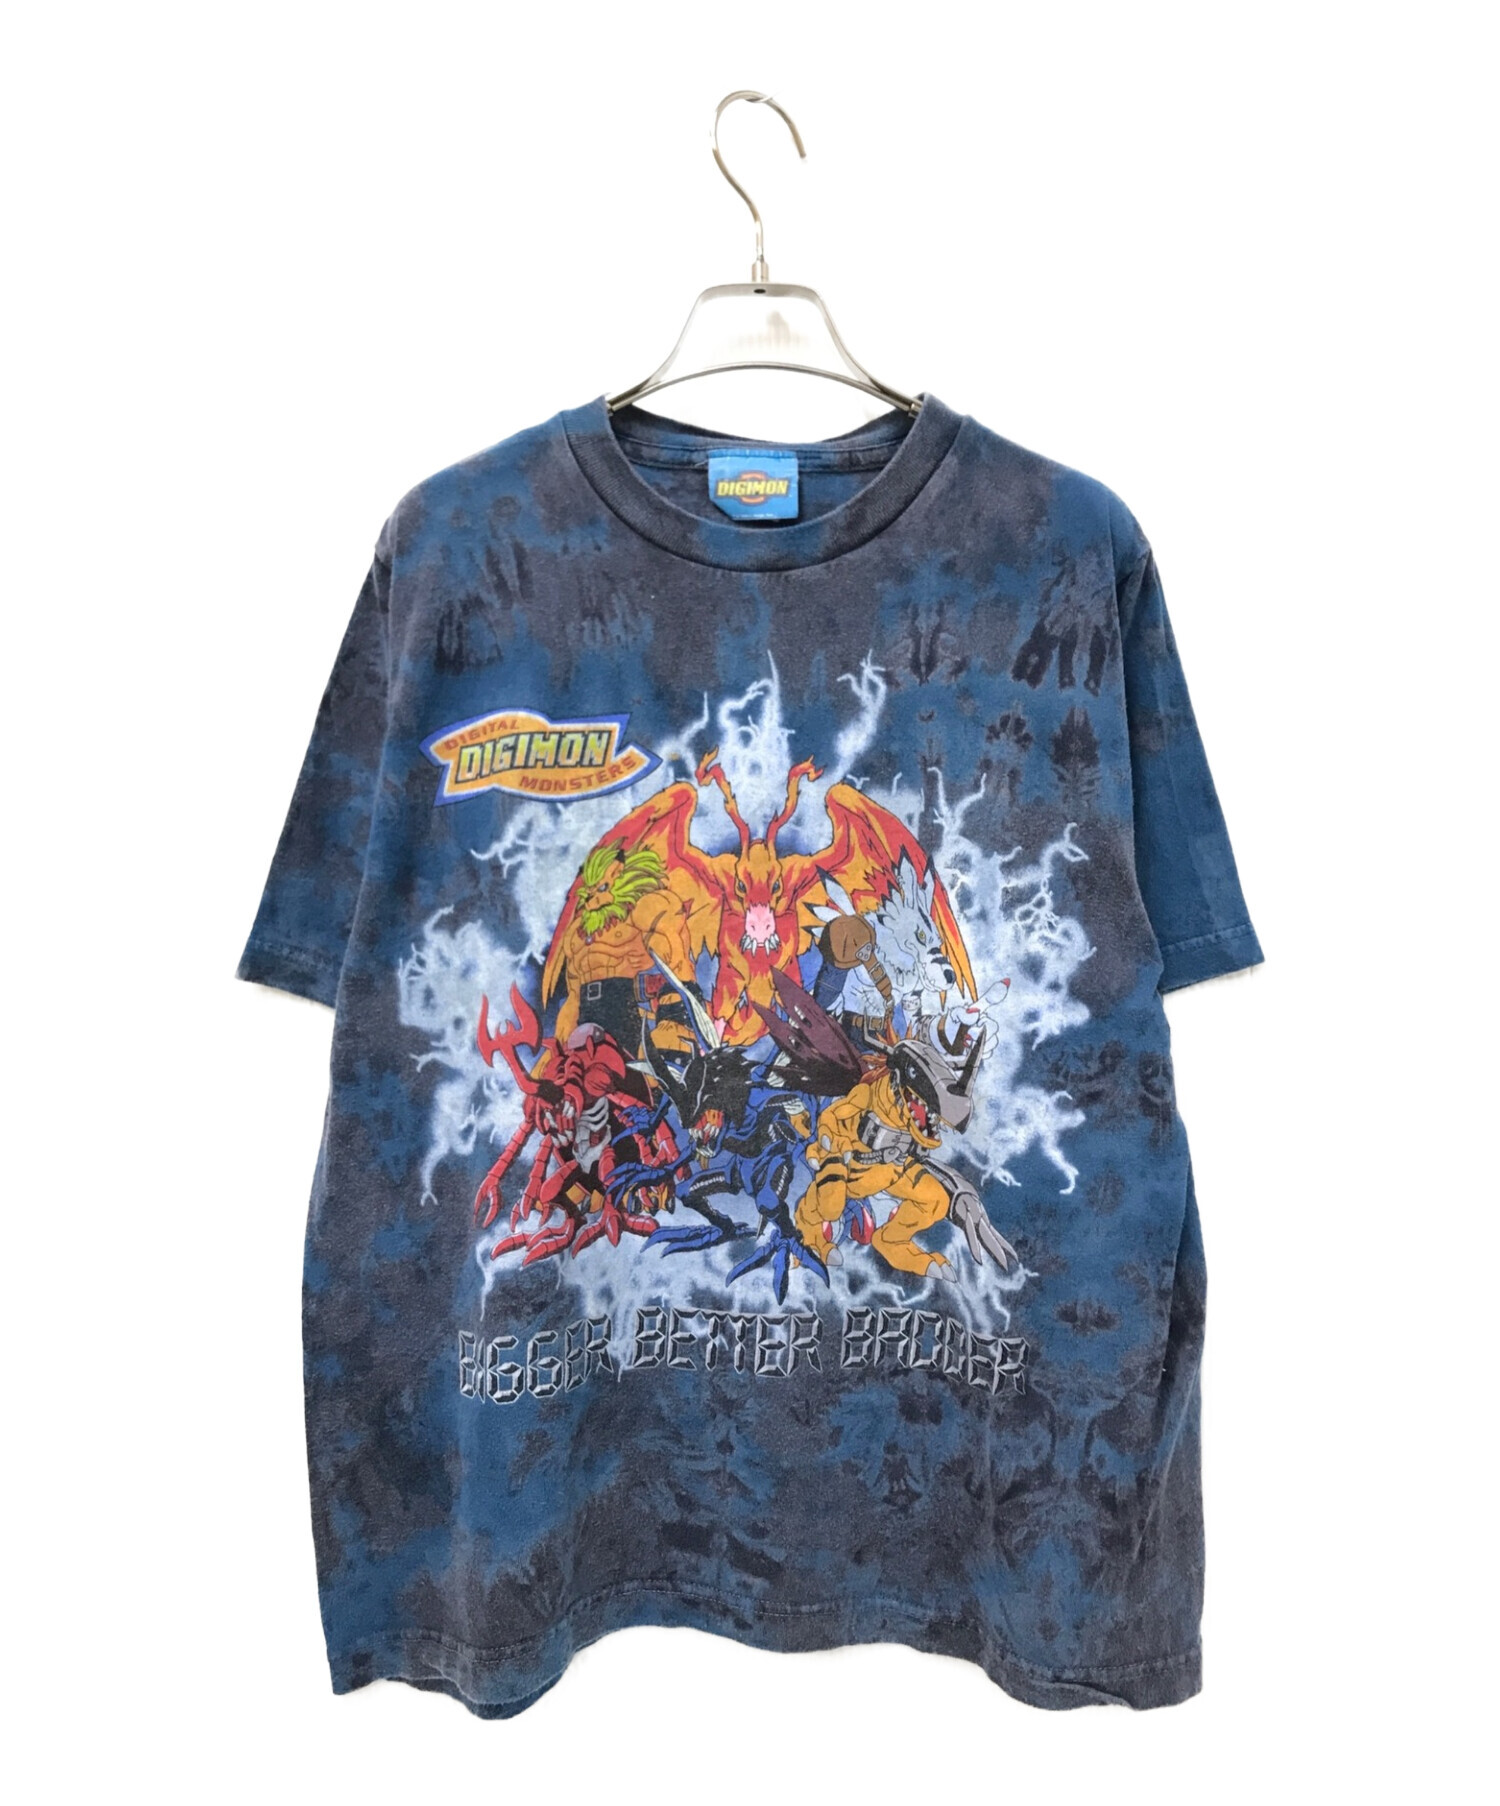 DIGIMON (デジモン) 00'sタイダイ柄アニメTシャツ グレー×ブルー サイズ:XL